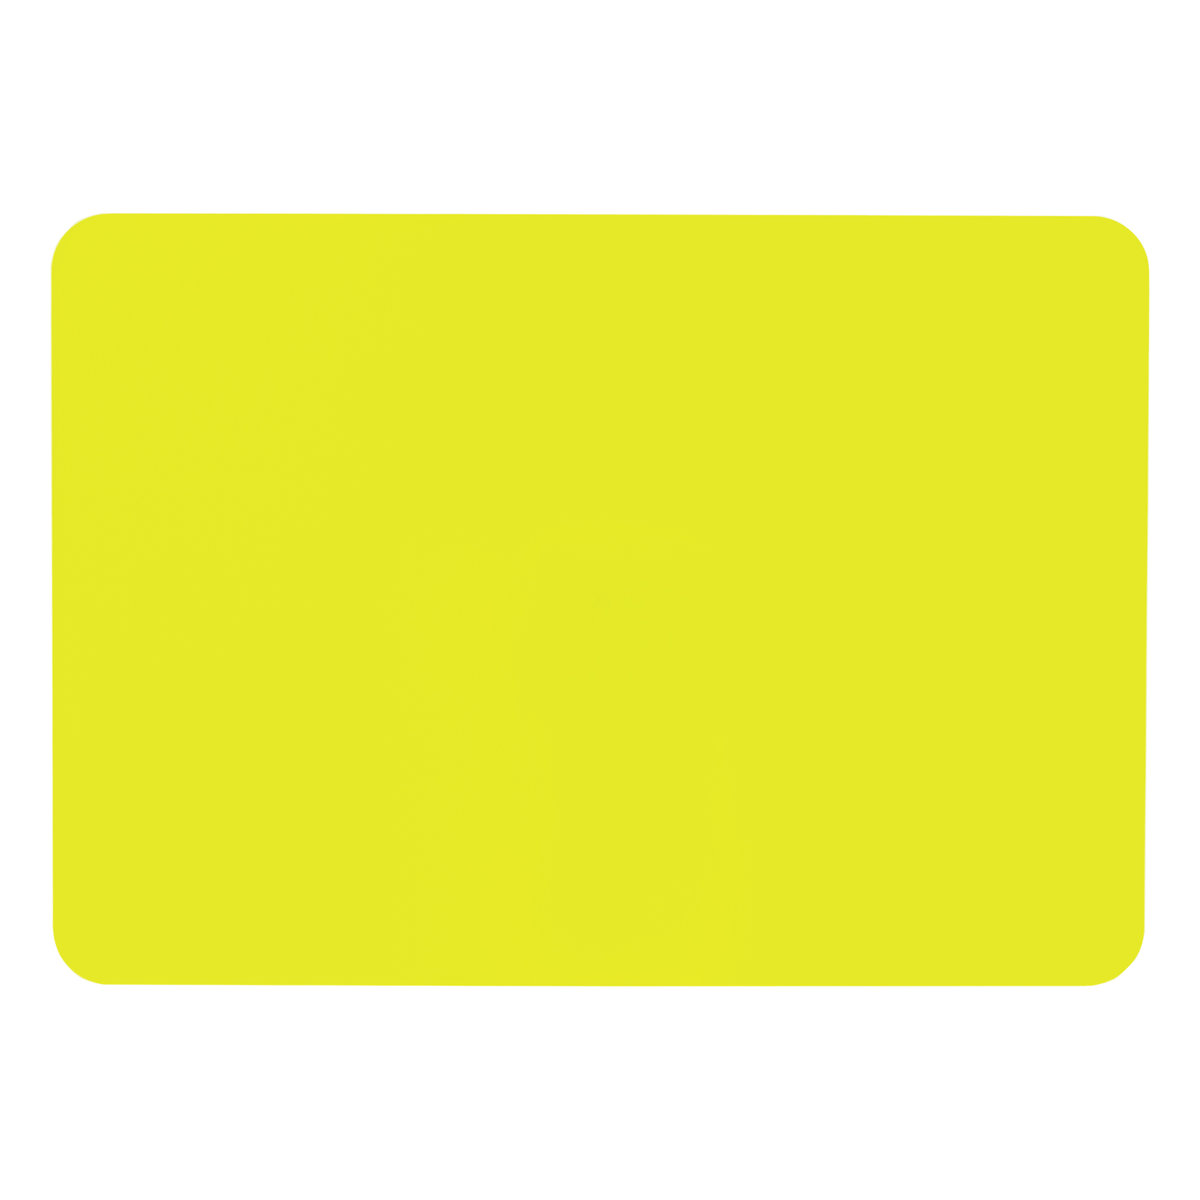 Доска для лепки Юнландия желтая - фото 5